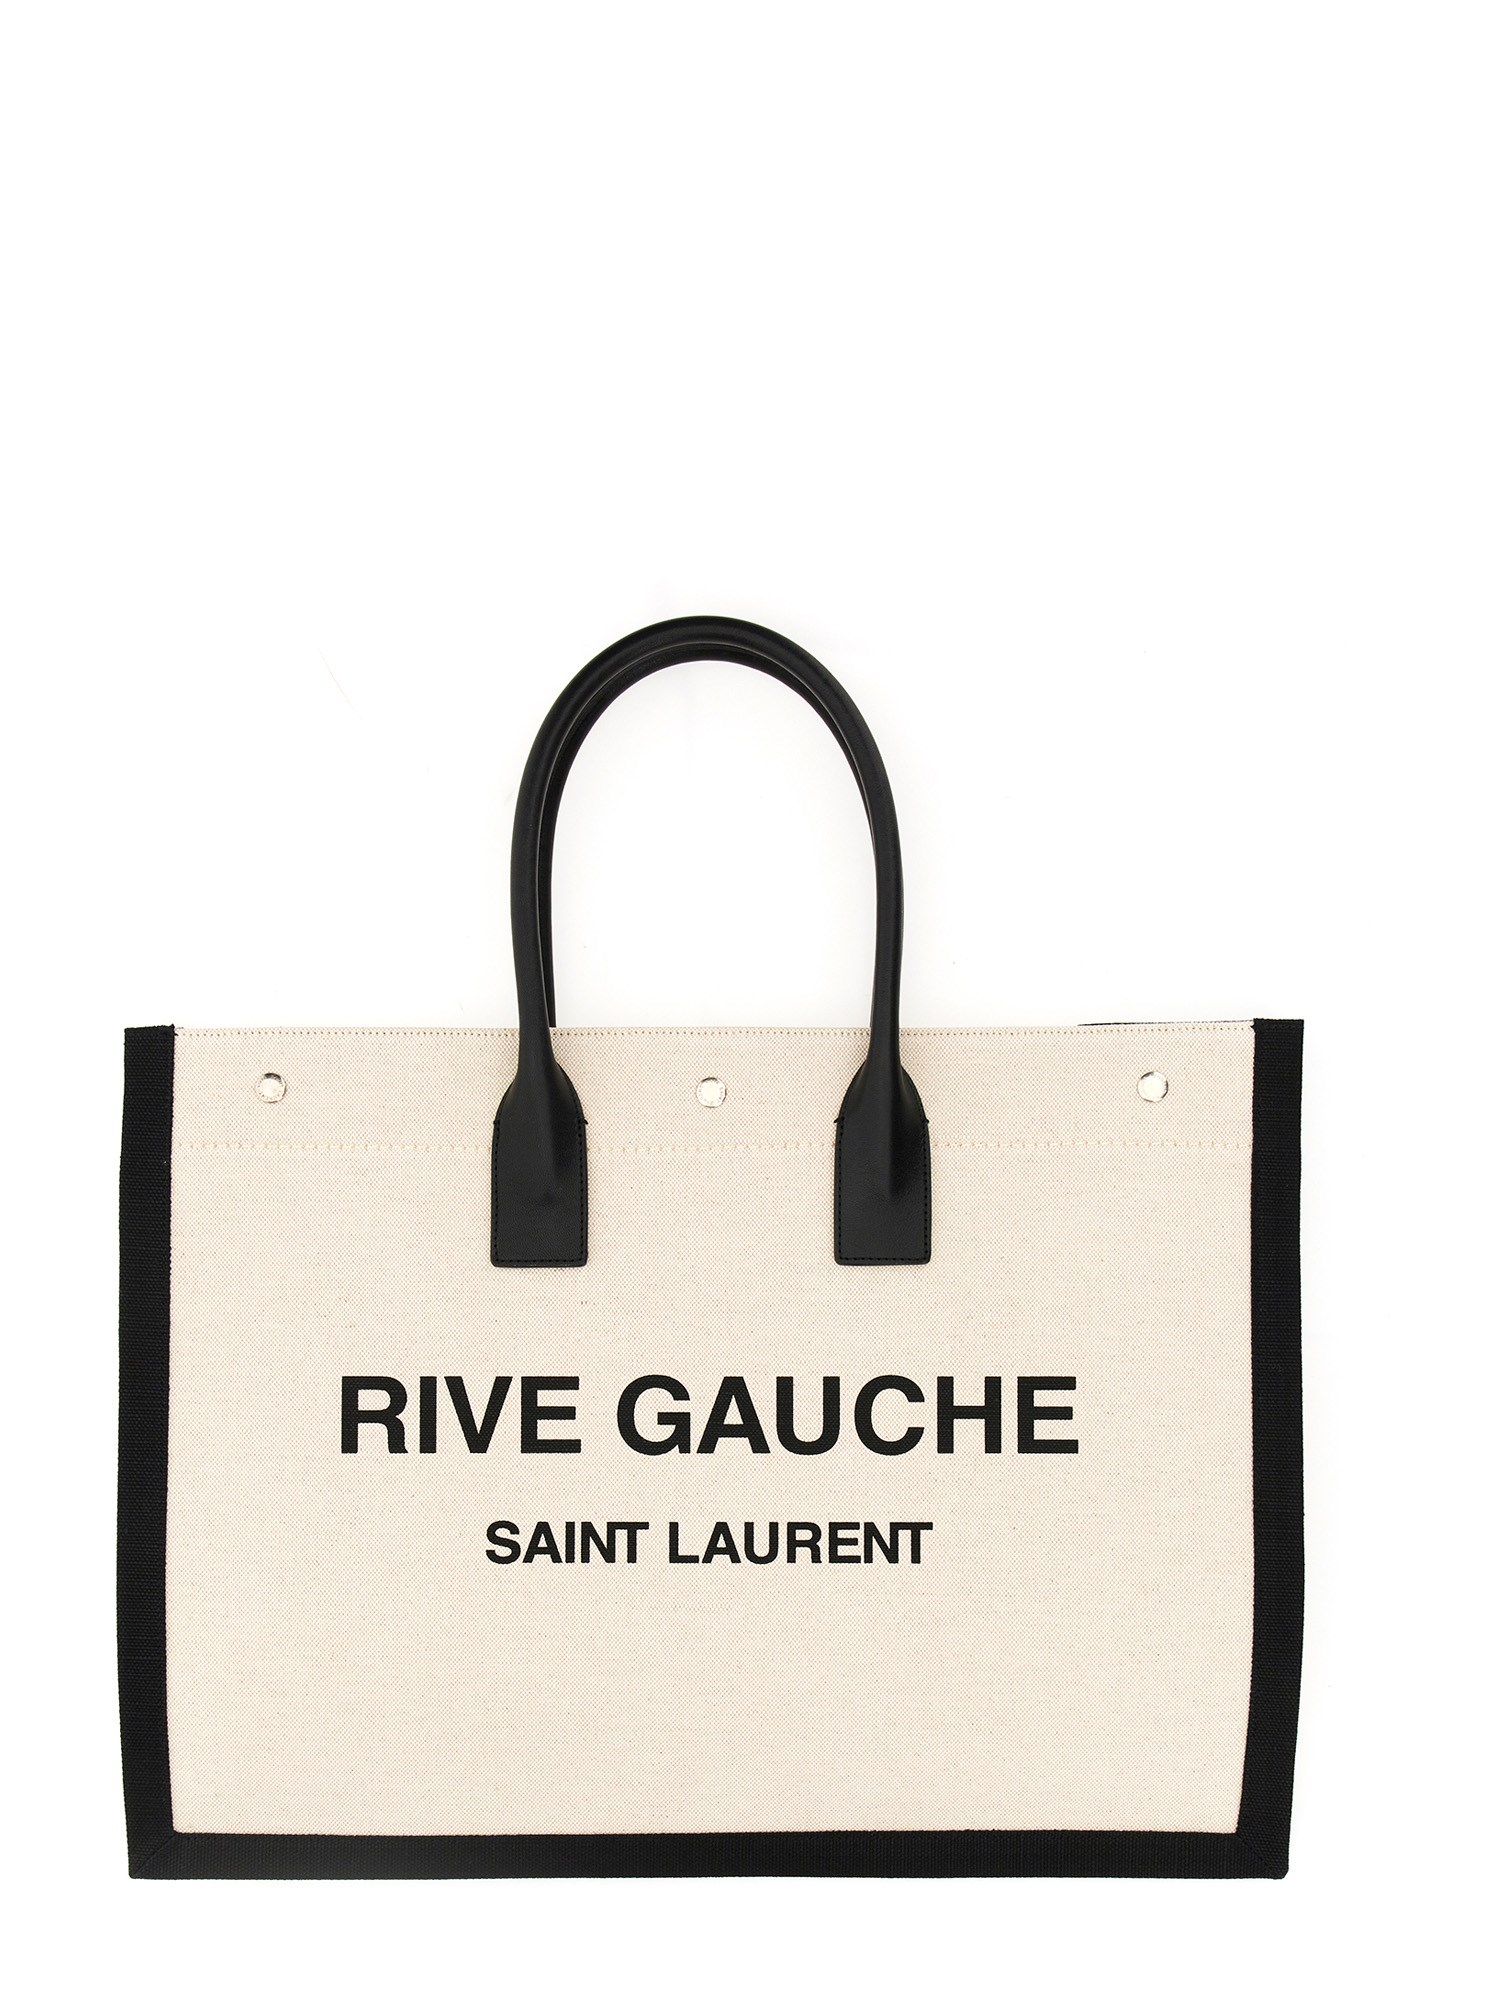 Saint Laurent Rive Gauche Tote Bag Large